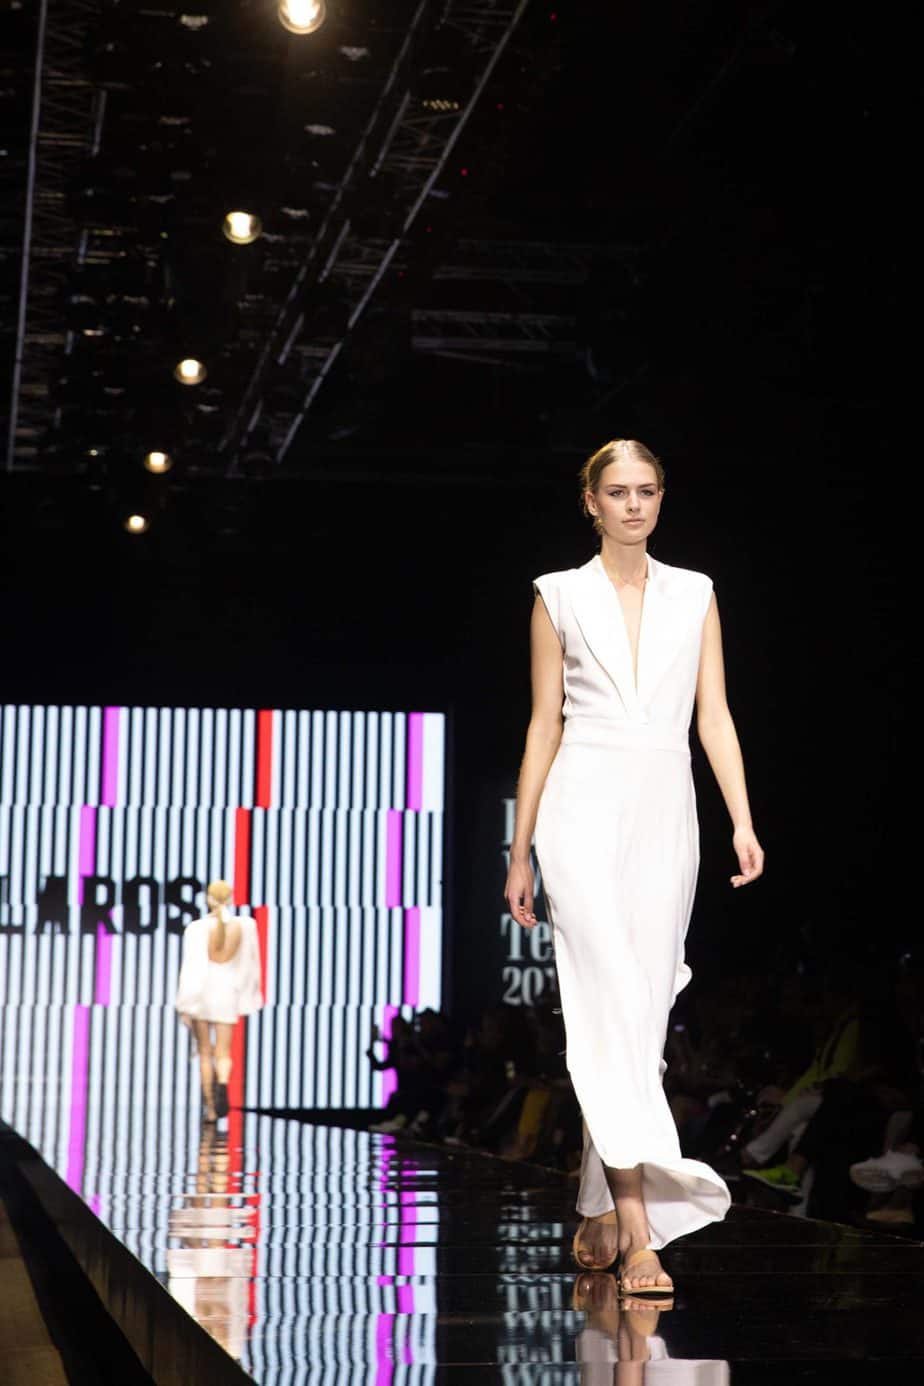 קולקציה עידן לרוס, תצוגת אופנה עידן לרוס שבוע האופנה תל אביב 2019, צילום עומר קפלן - 1